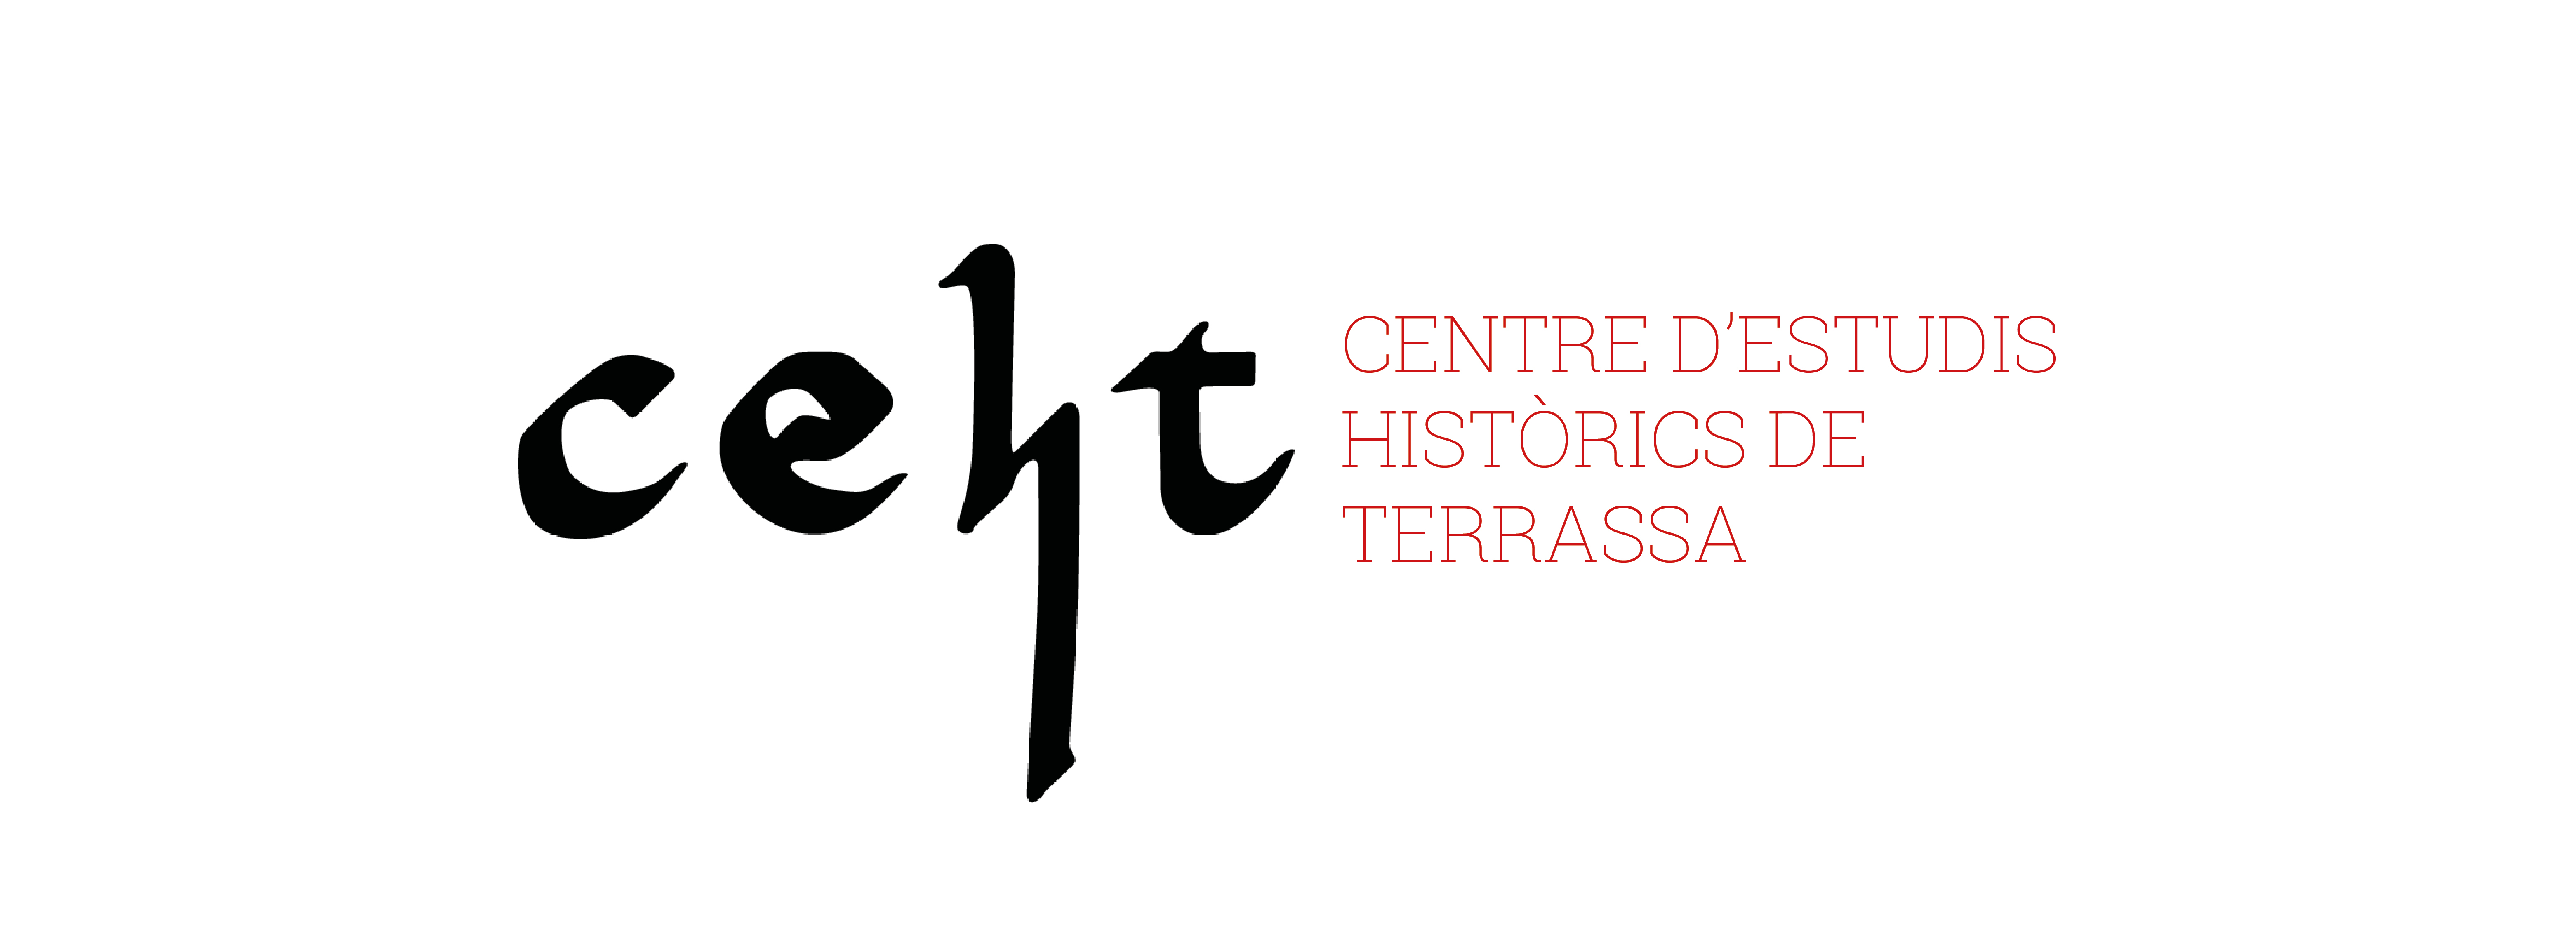 ceht (escrit amb caligrafia carolina) - centre d'estudis històrics de terrassa